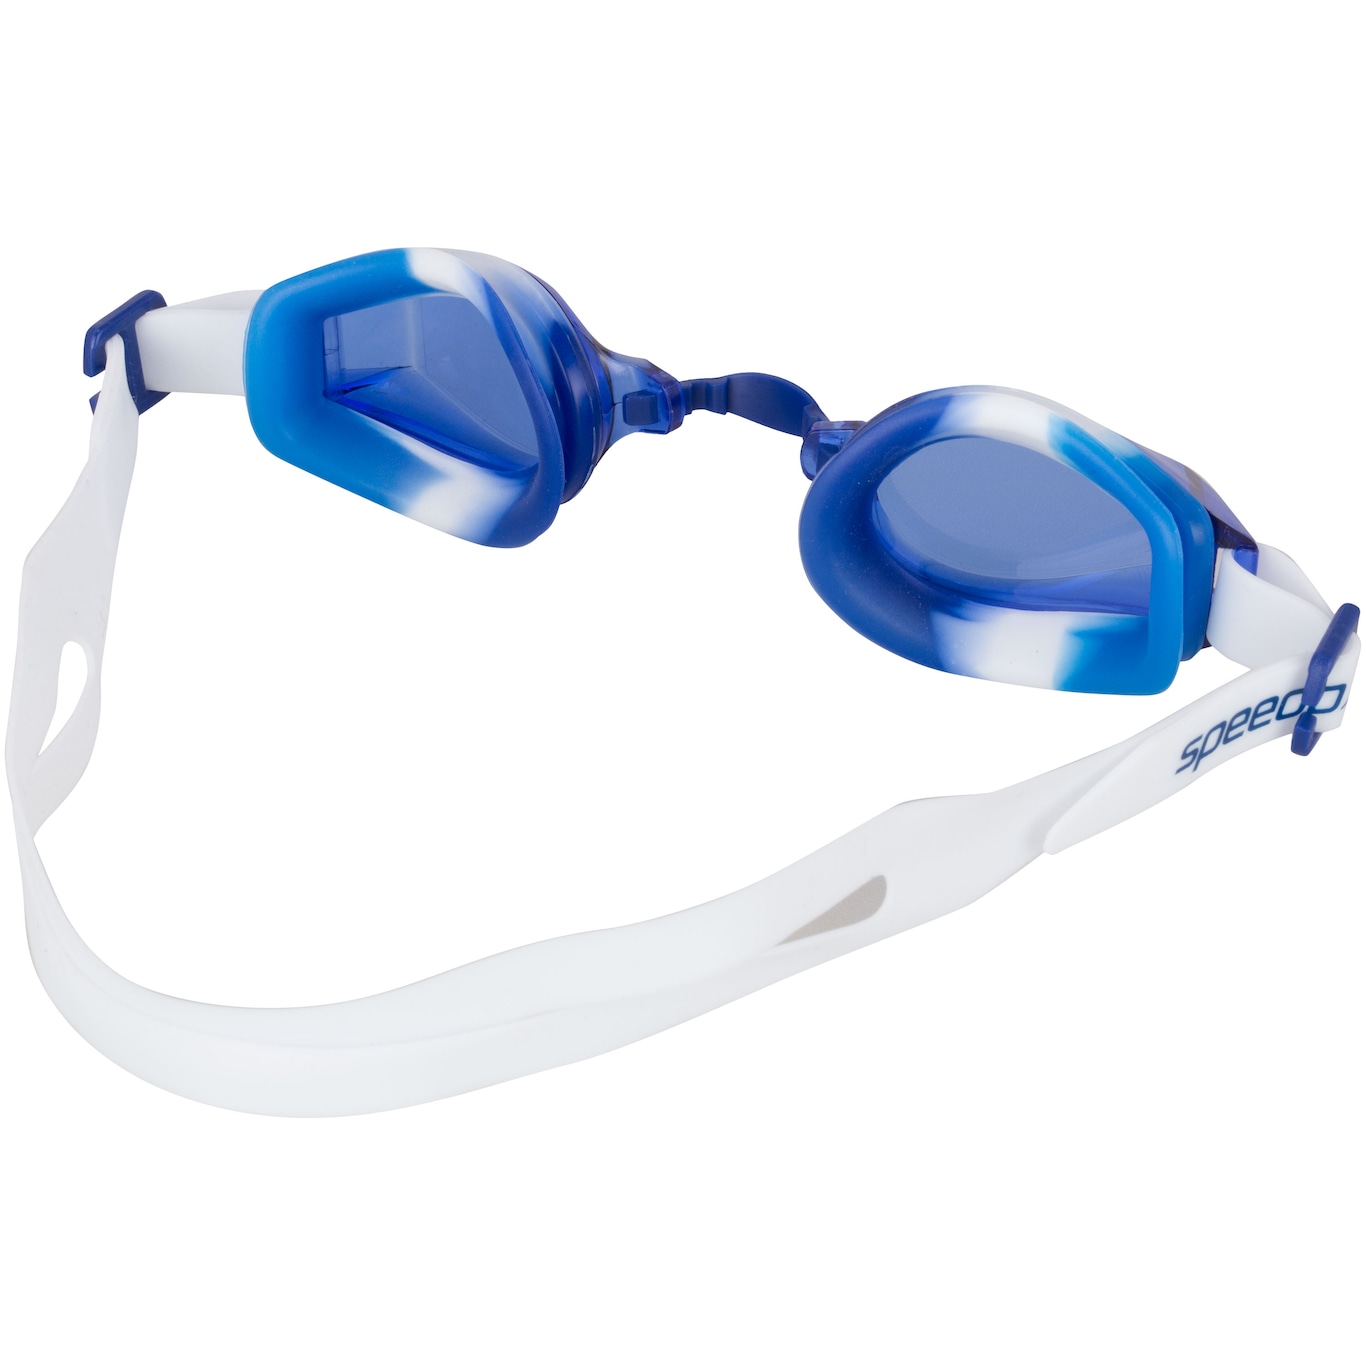 Kit de Natação Speedo Swim 3.0 com Óculos + Touca - Infantil - Foto 3